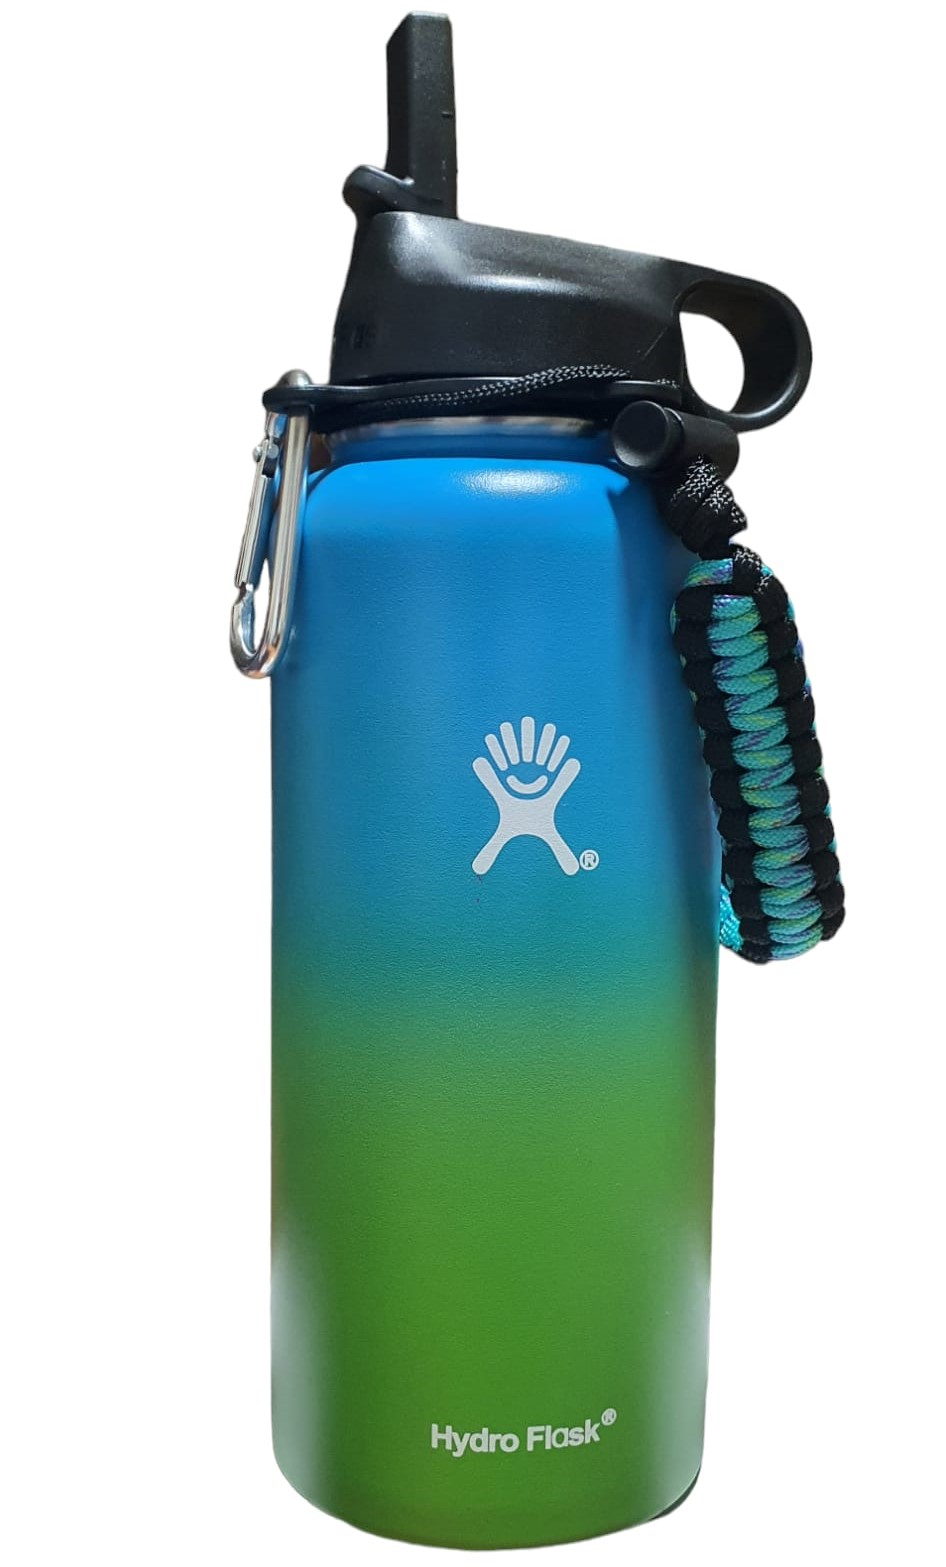 Sticla de apa Hydro Flask din otel inoxidabil si izolata in vid cu capac, sistem de prindere si pai 946 ml, albastru/verde